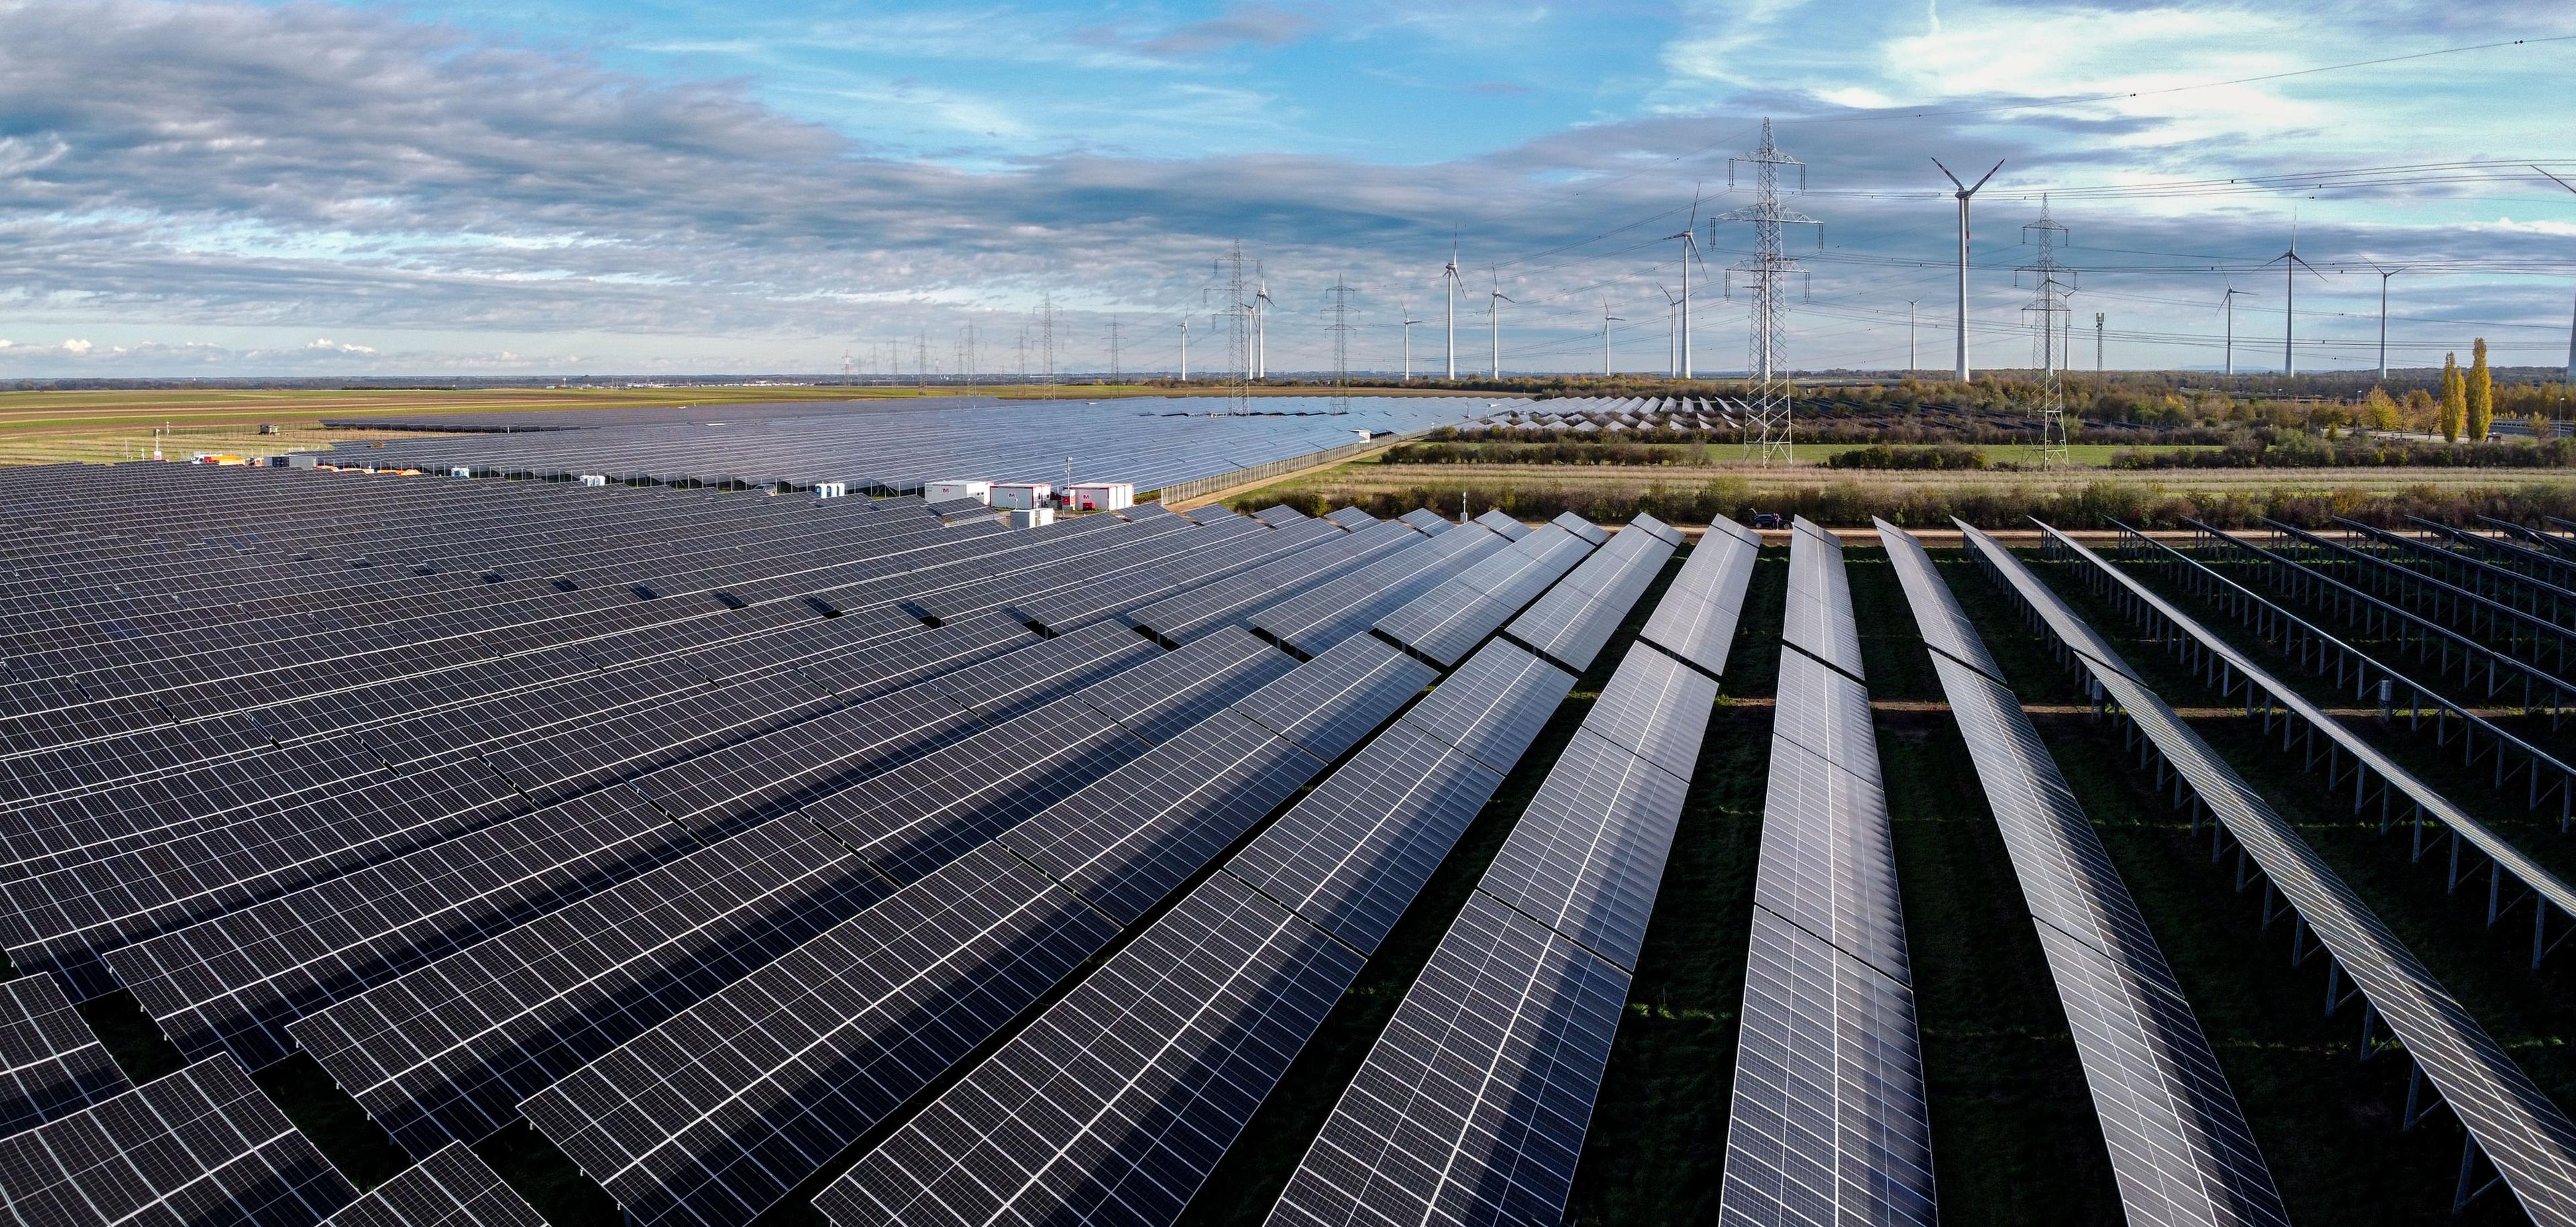 Luftaufnahme eines großen Solarparks mit Reihen von Solarmodulen und Windrädern im Hintergrund